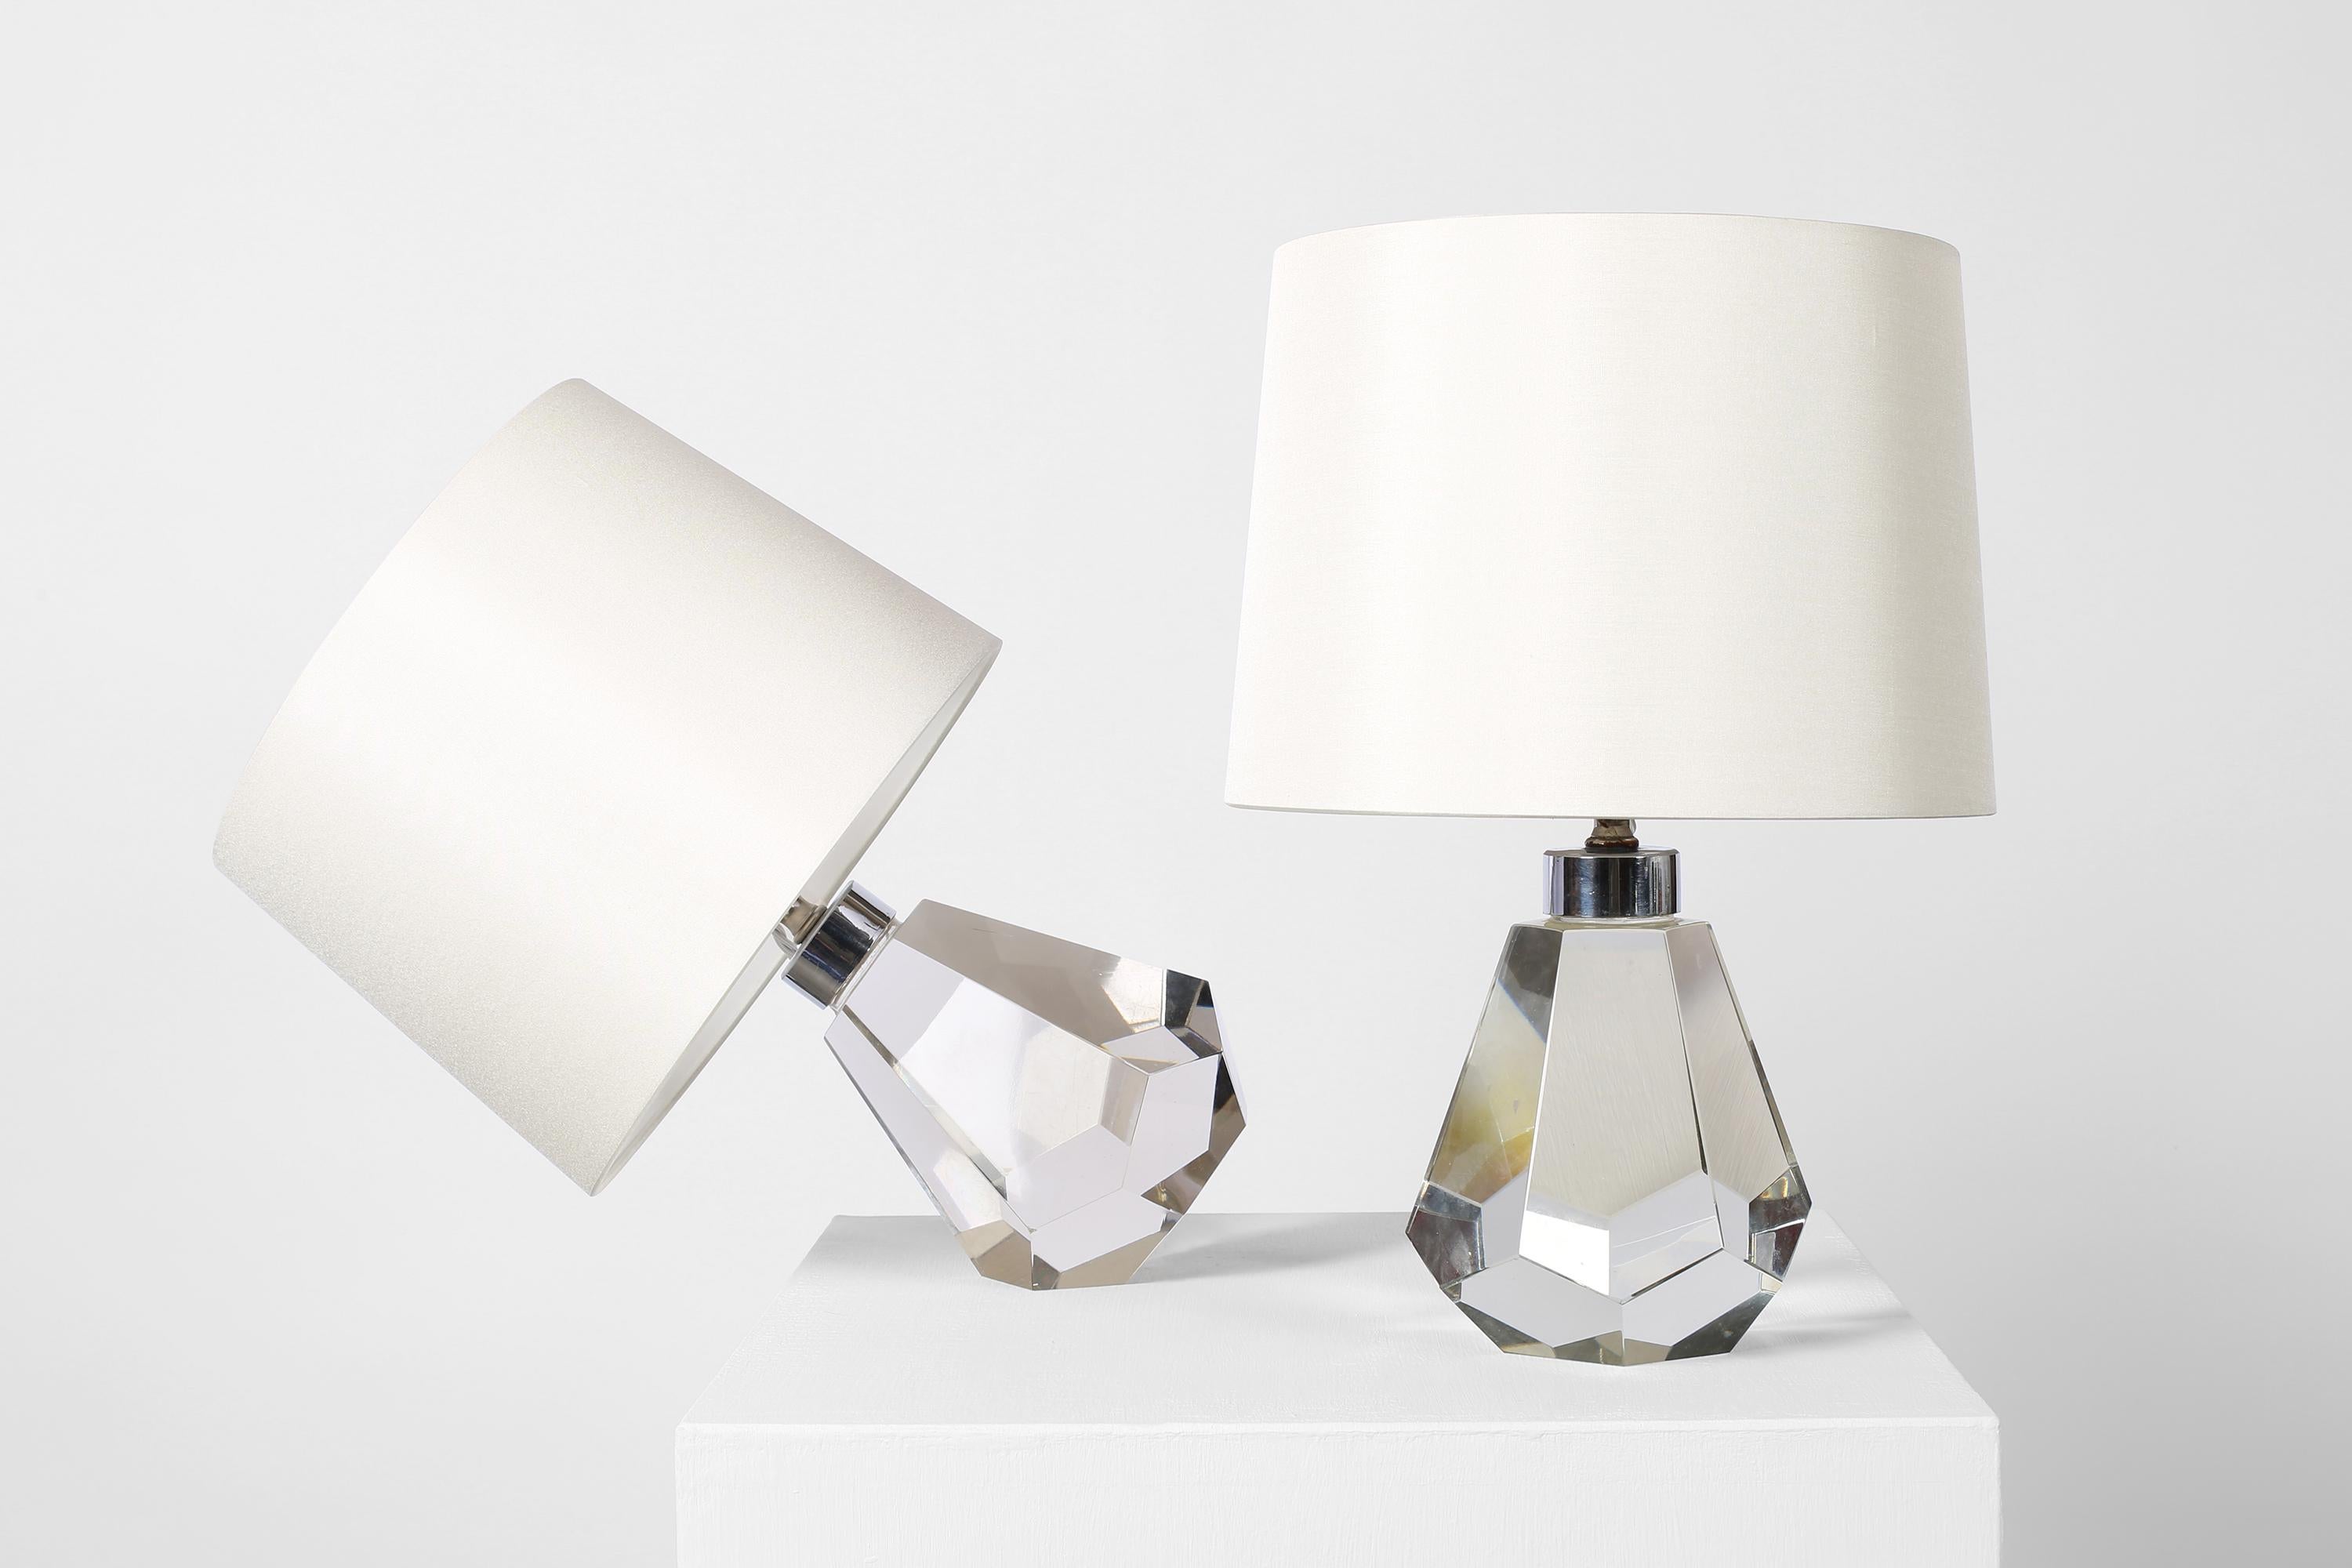 Rare paire de lampes de table Art Déco en cristal facetté, de forme idéale. La base angulaire permet aux lampes de s'asseoir à la verticale ou à l'angle, comme la lampe boule de cristal de Baccarat de Jacques Adnet. Français, c. C. C. Whiting avec